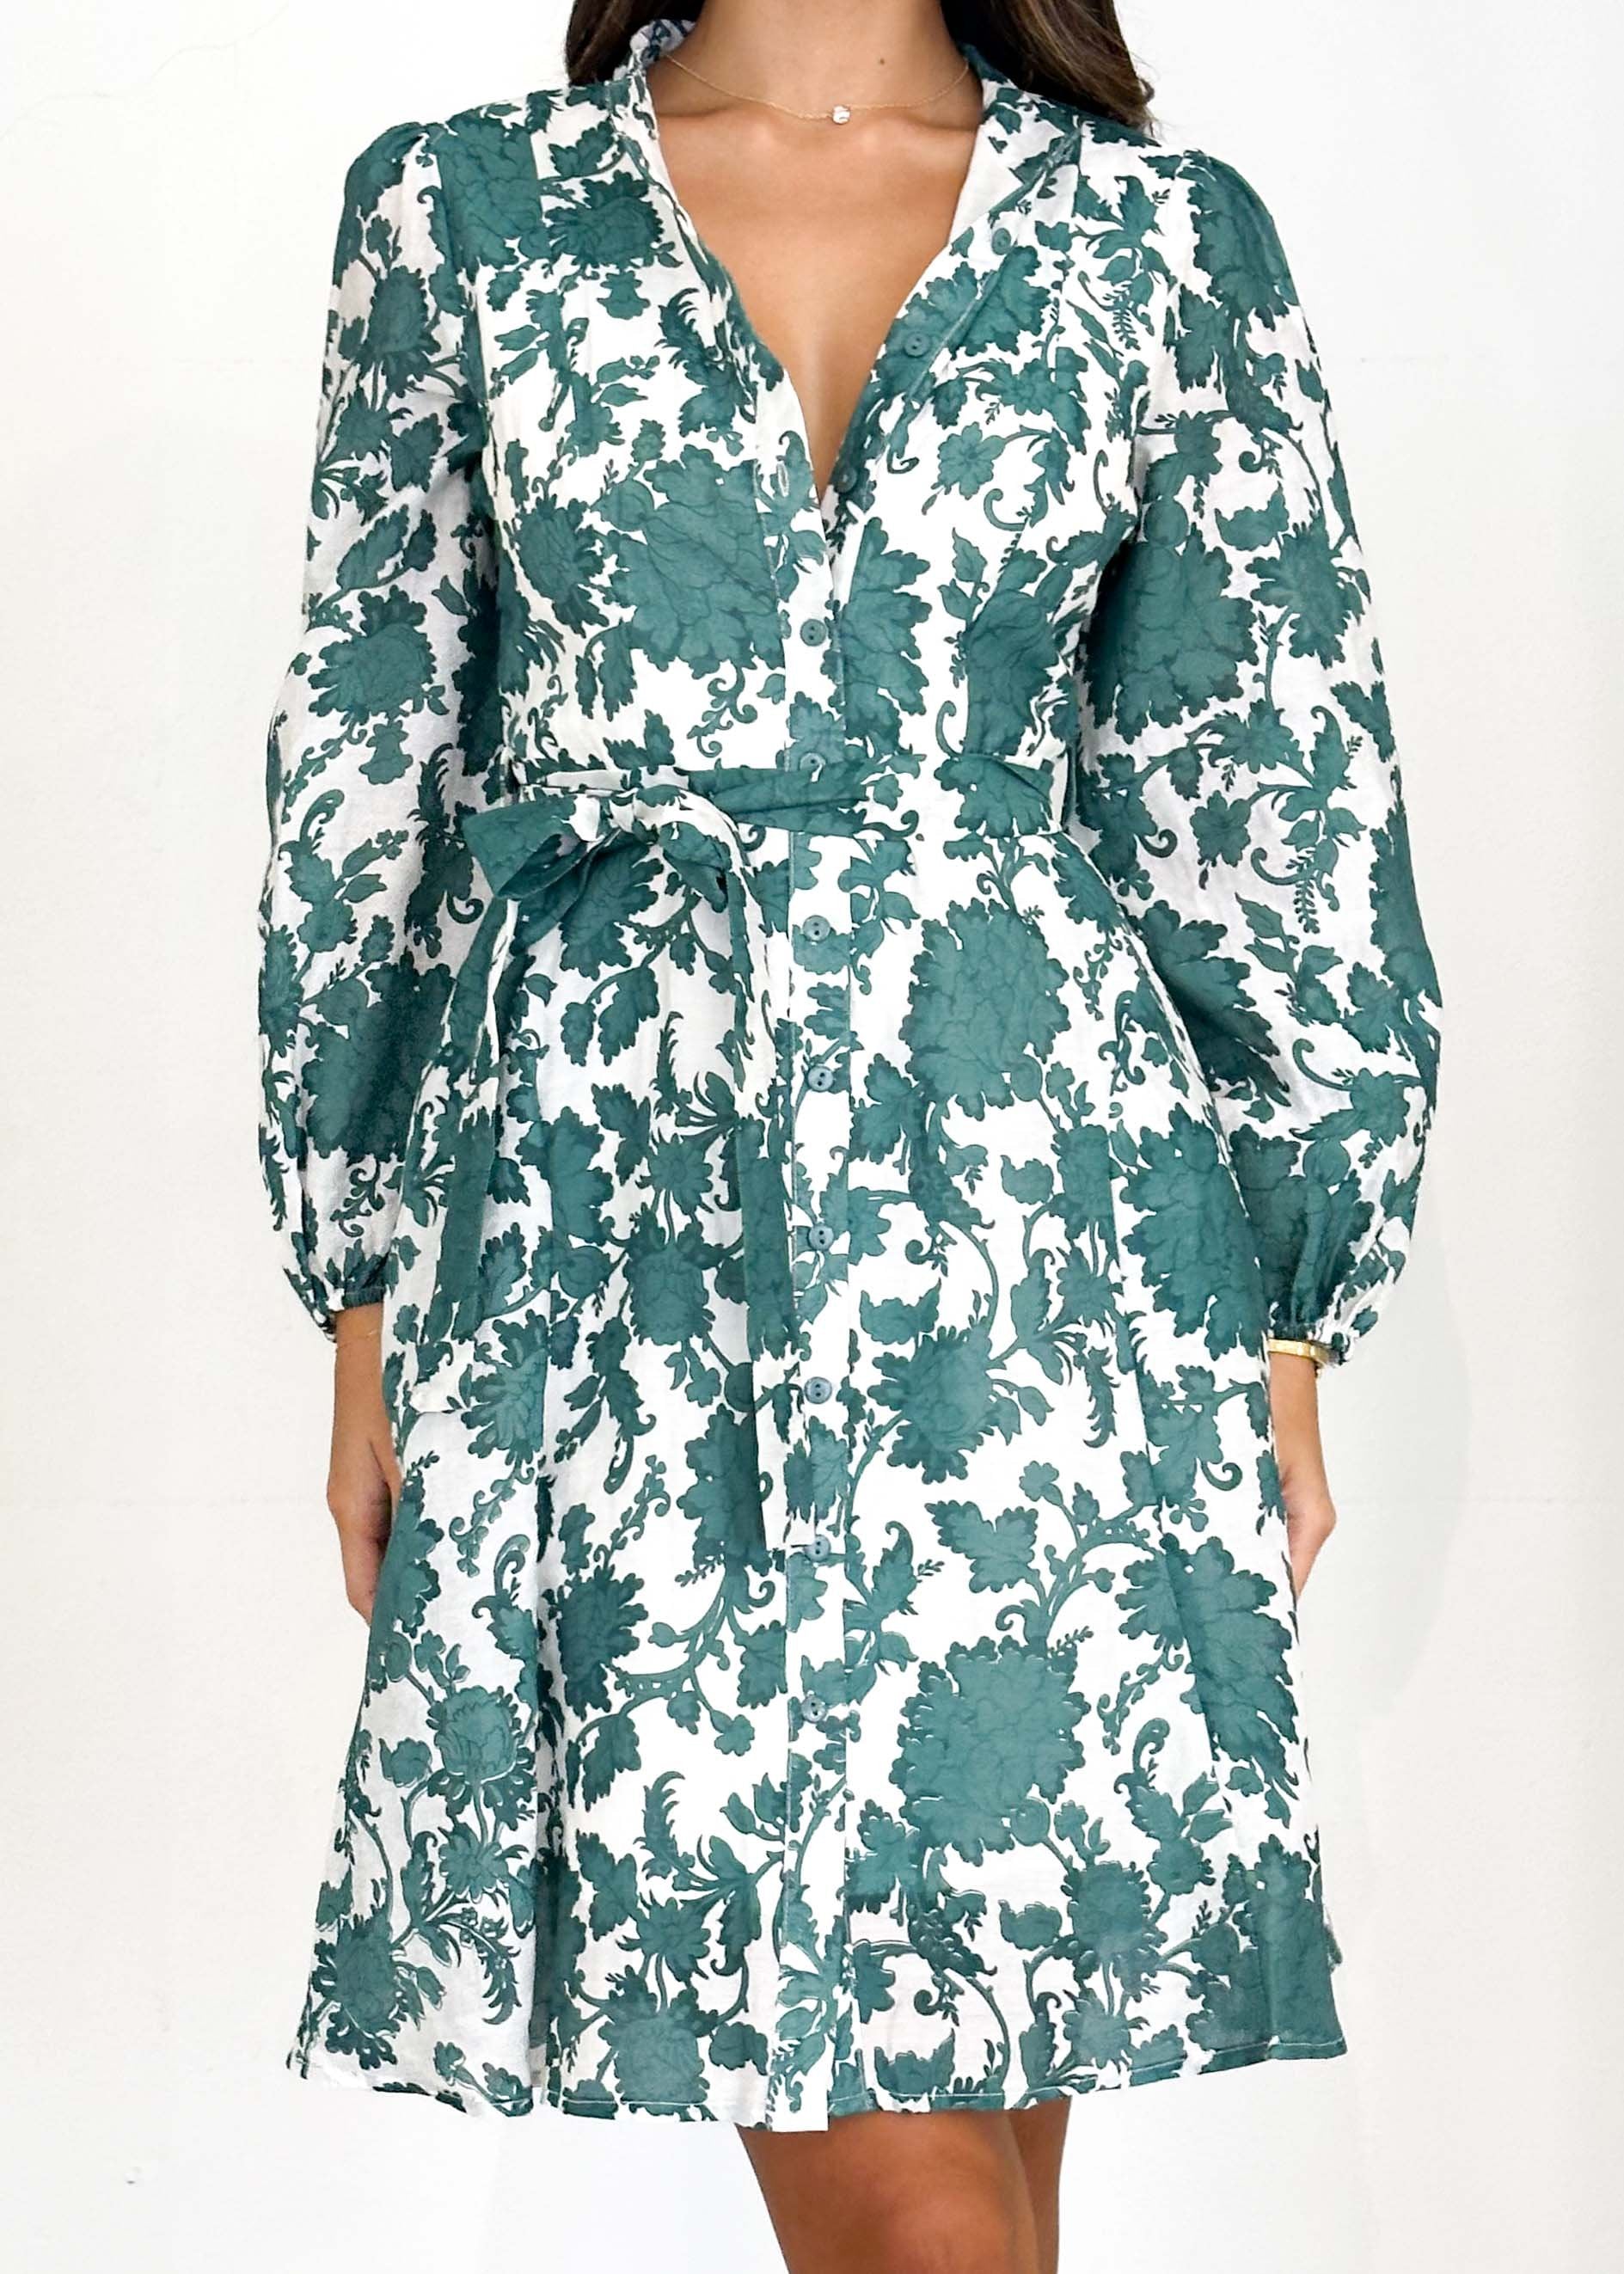 Dessair Dress - Green Floral